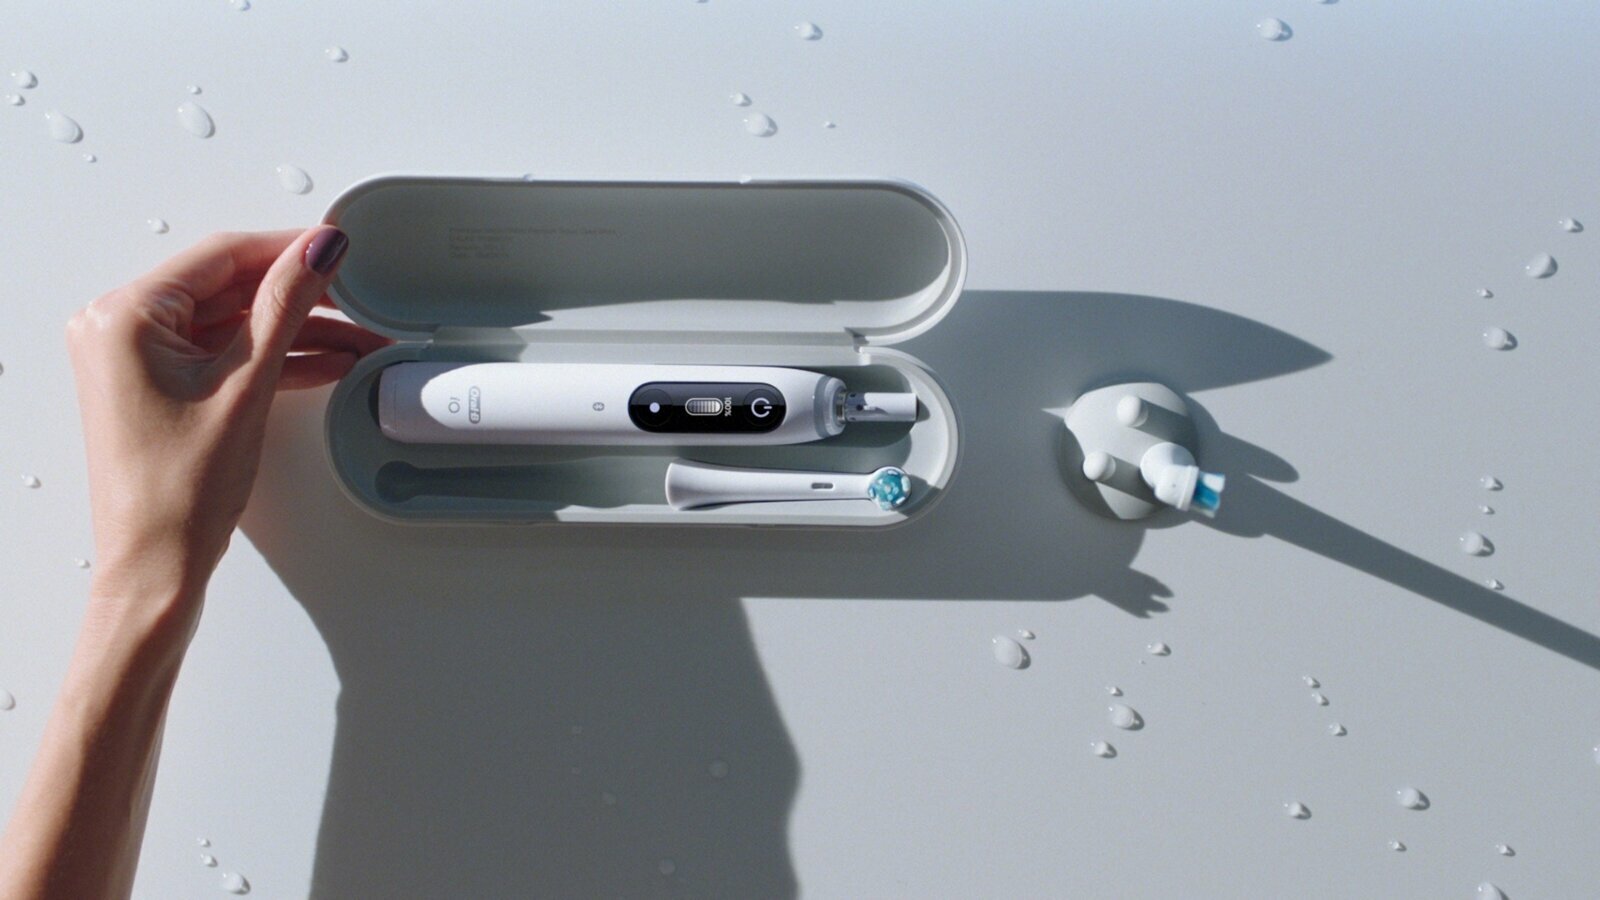 Nowa magnetyczna szczoteczka elektryczna Oral-B pomoże zmotywować pacjentów